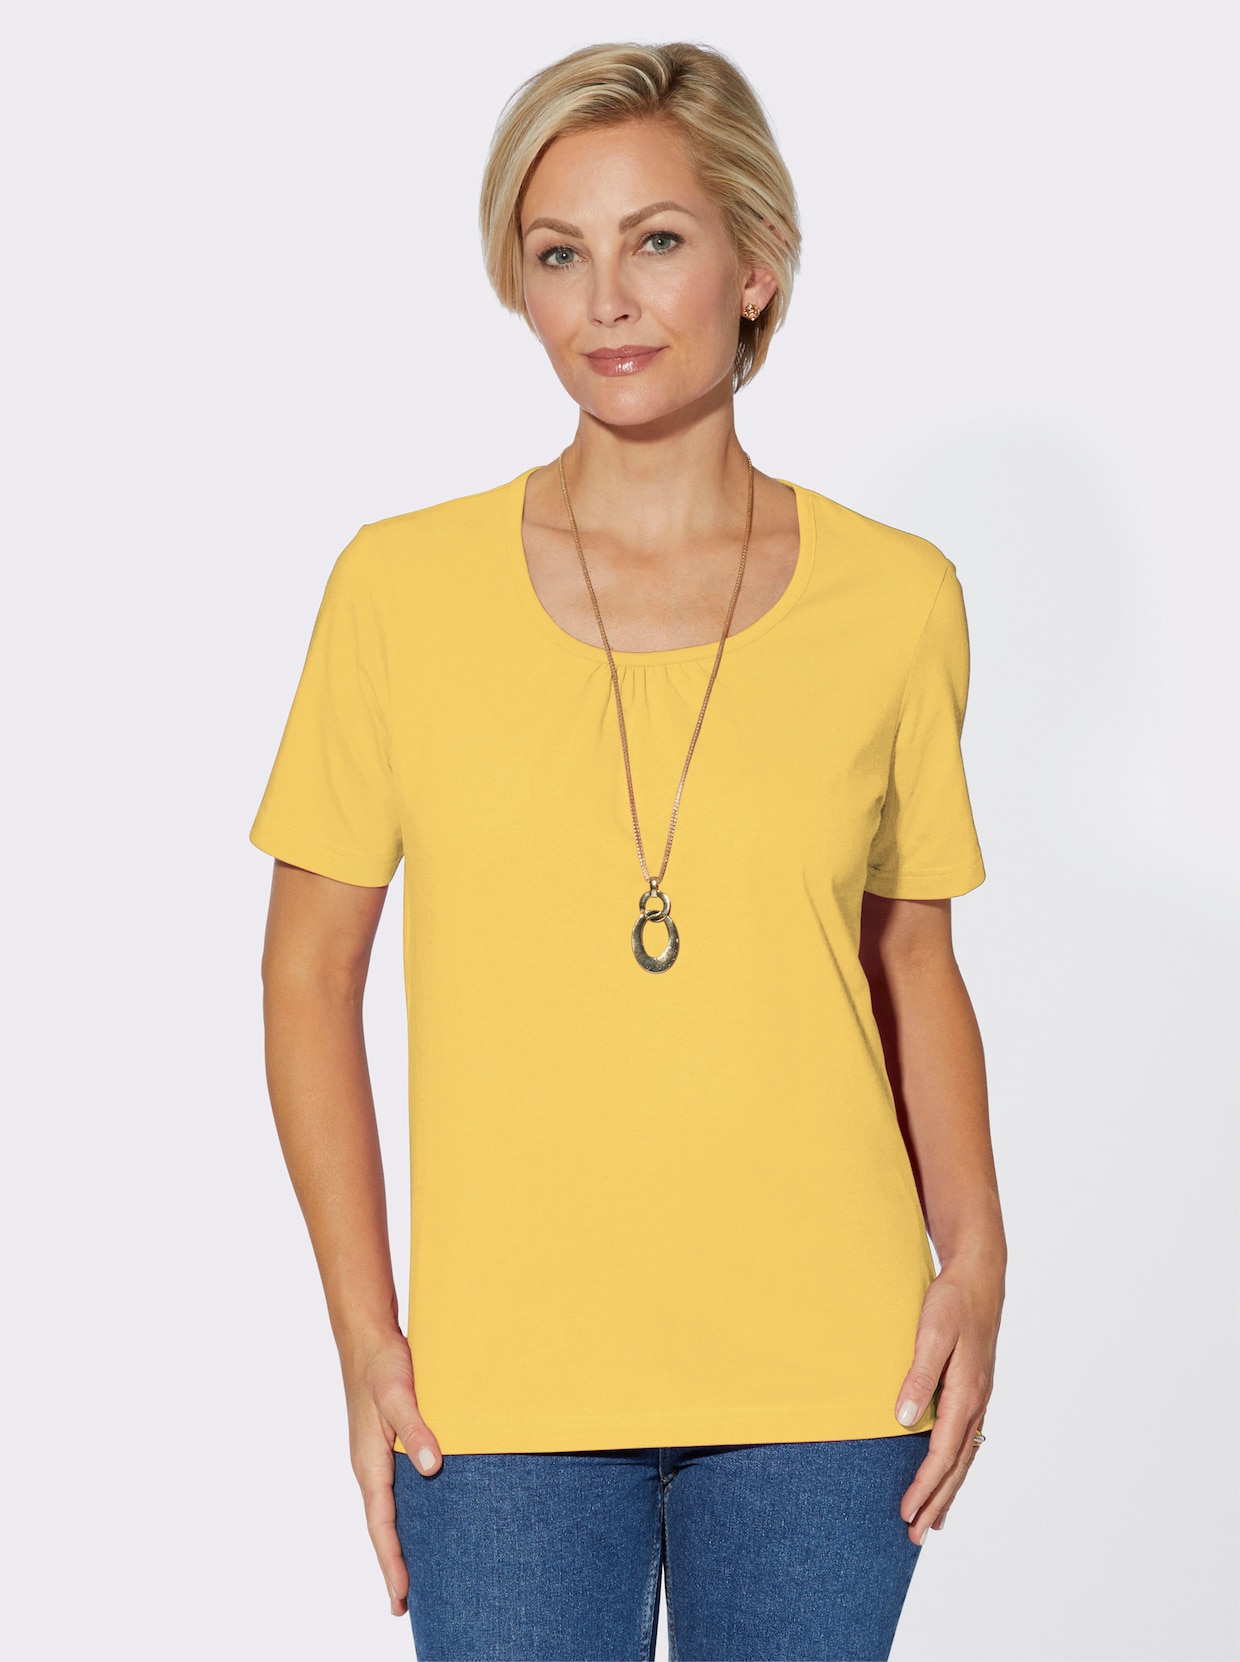 Kurzarmshirt - gelb + gelb-weiß-bedruckt